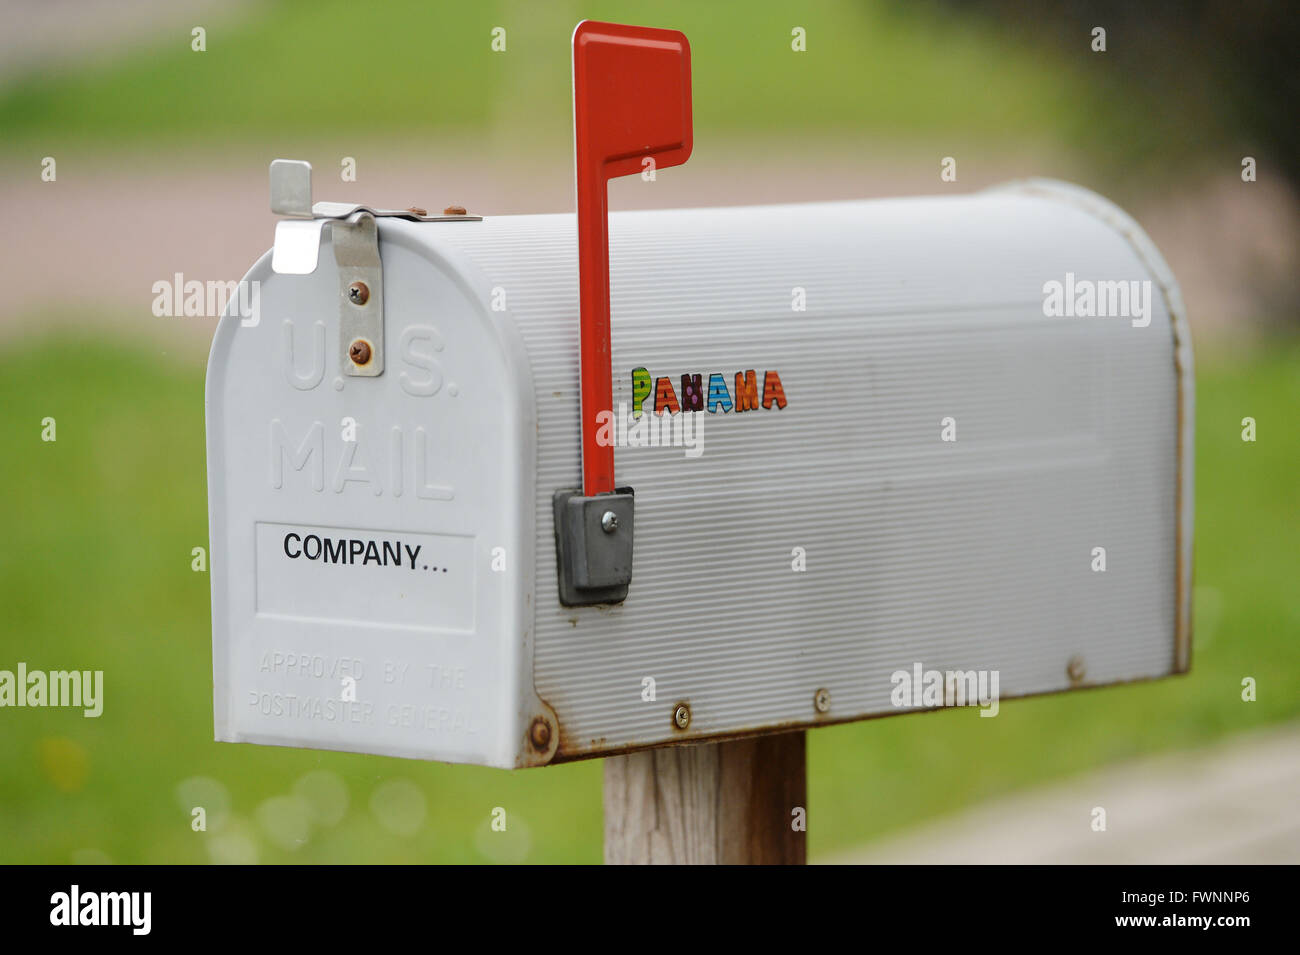 ILLUSTRATION - Le mot 'Panama' est écrit avec des autocollants sur une boîte aux lettres, en Allemagne, ville d'Osterode, 06. Avril 2016. Photo : Frank May Banque D'Images